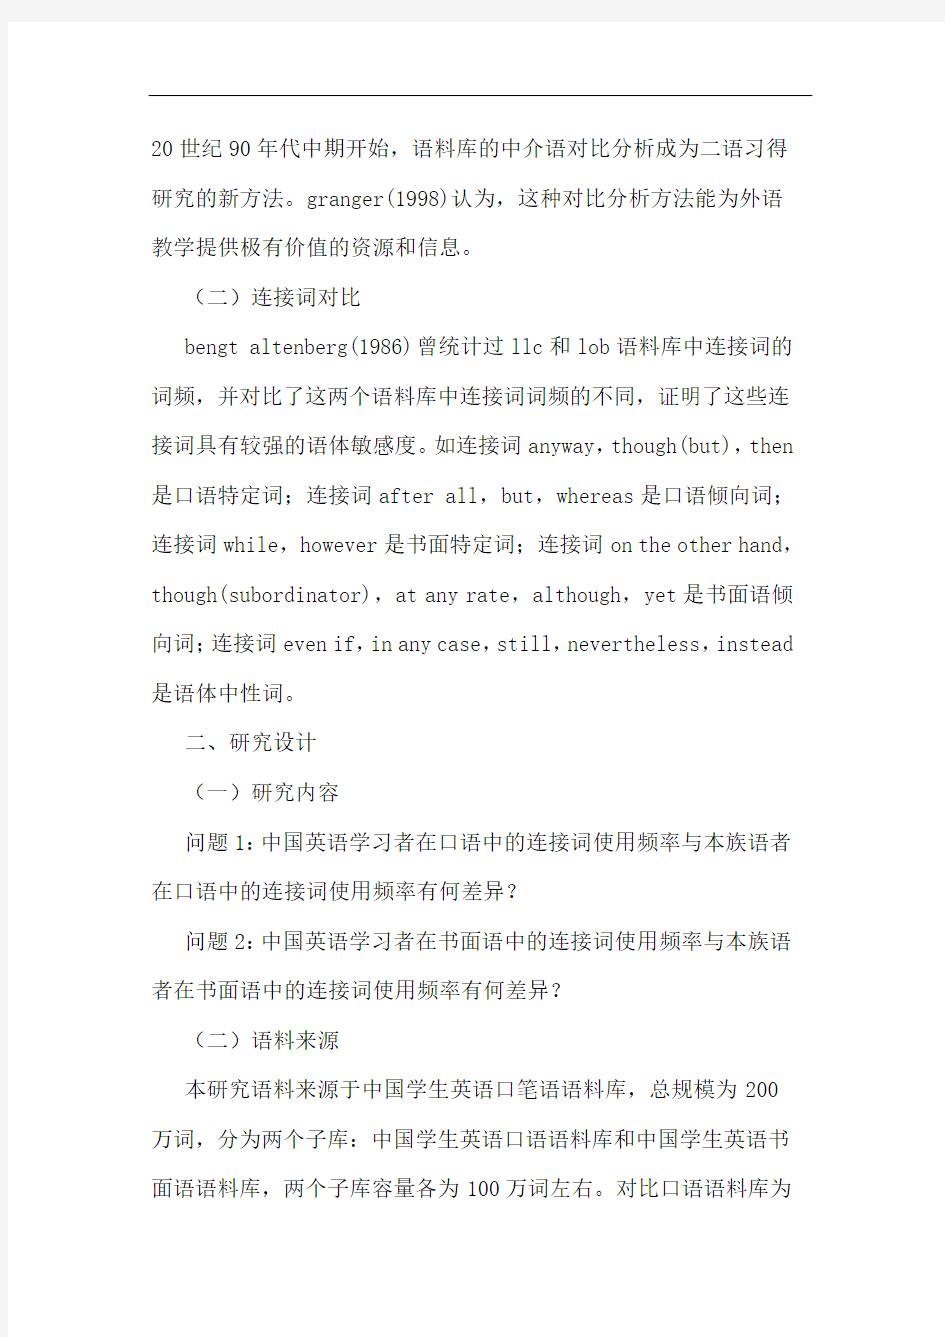 中国学习者英语口笔语语体特征-连接词论文